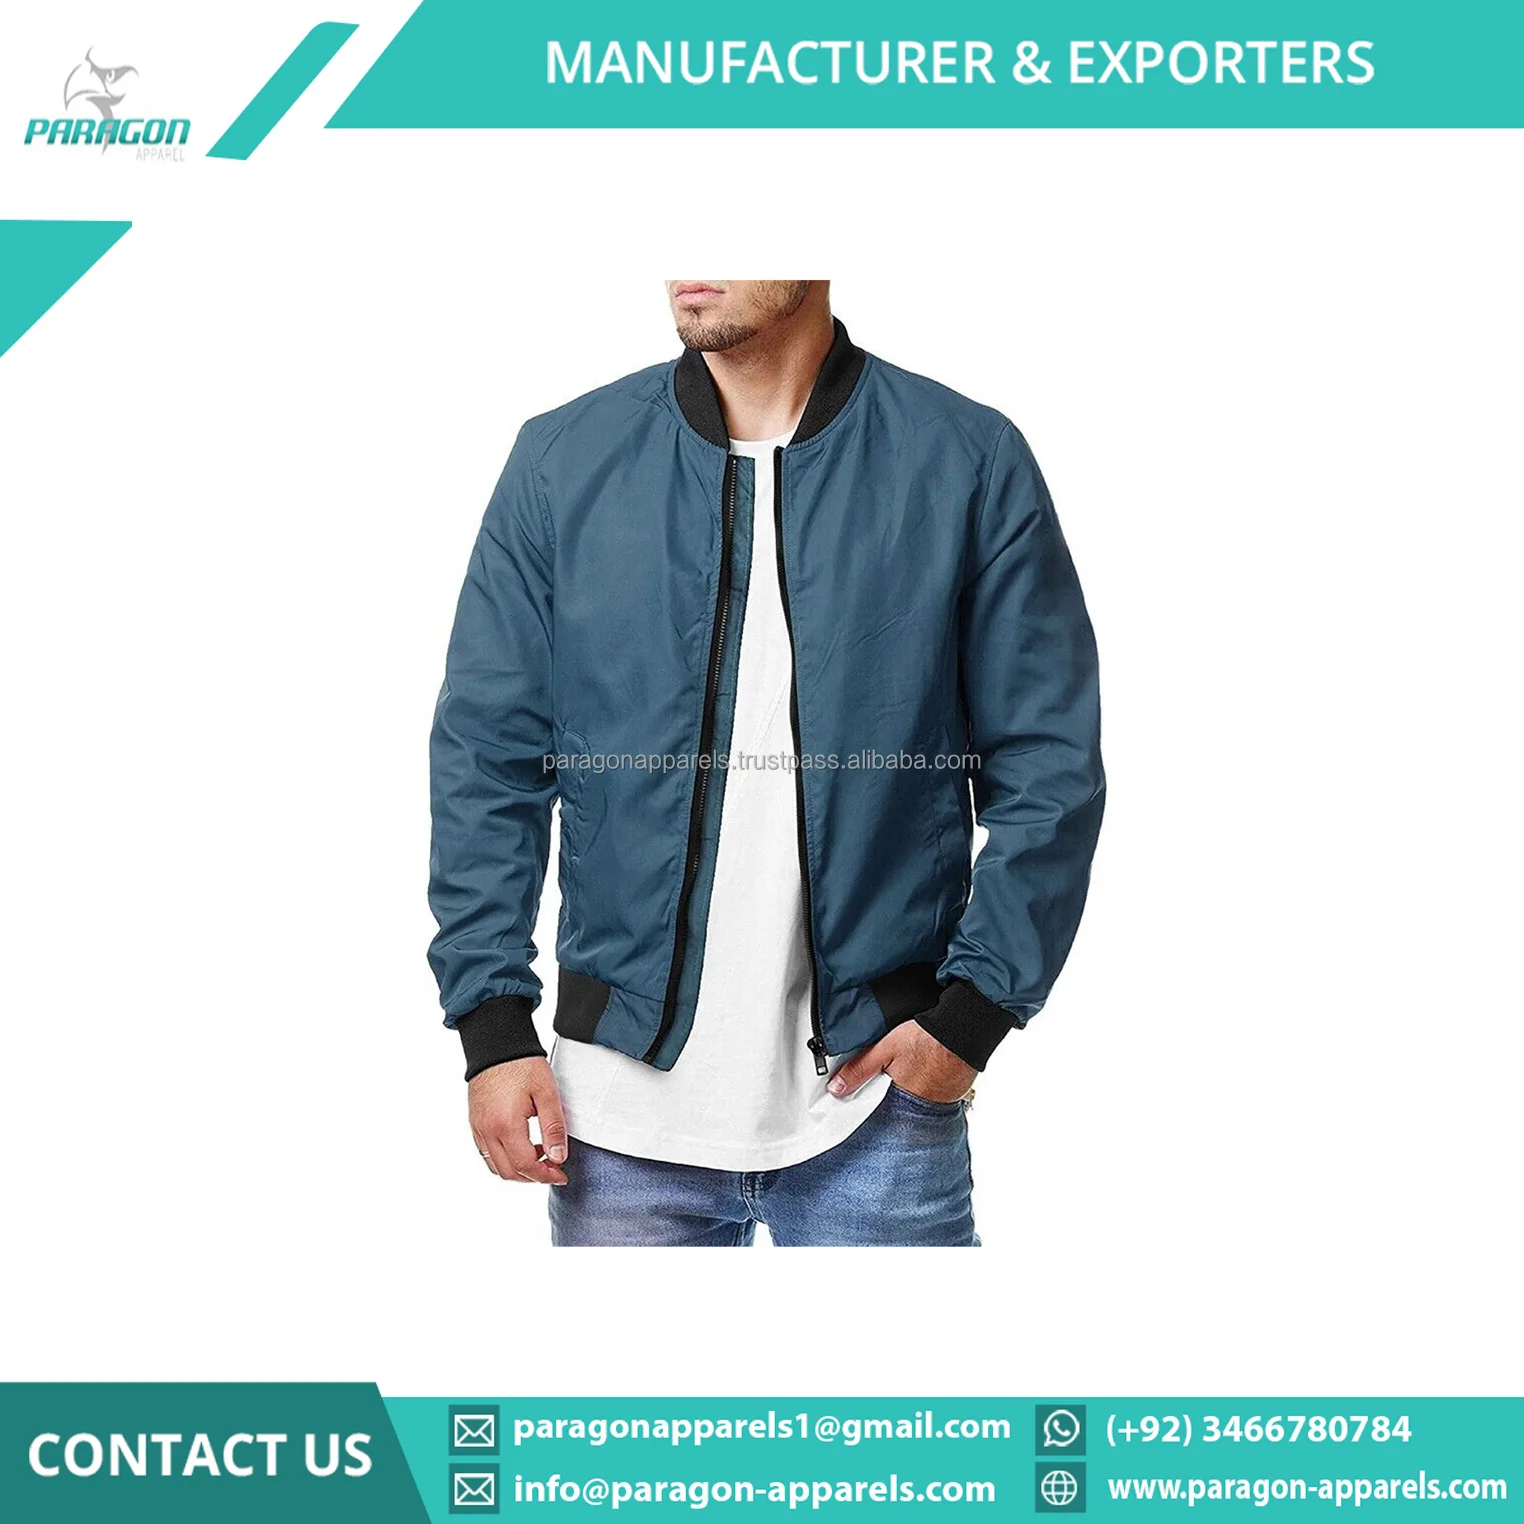 Denim Jacket In Dark Green Wholesale Manufacturer & Exporters